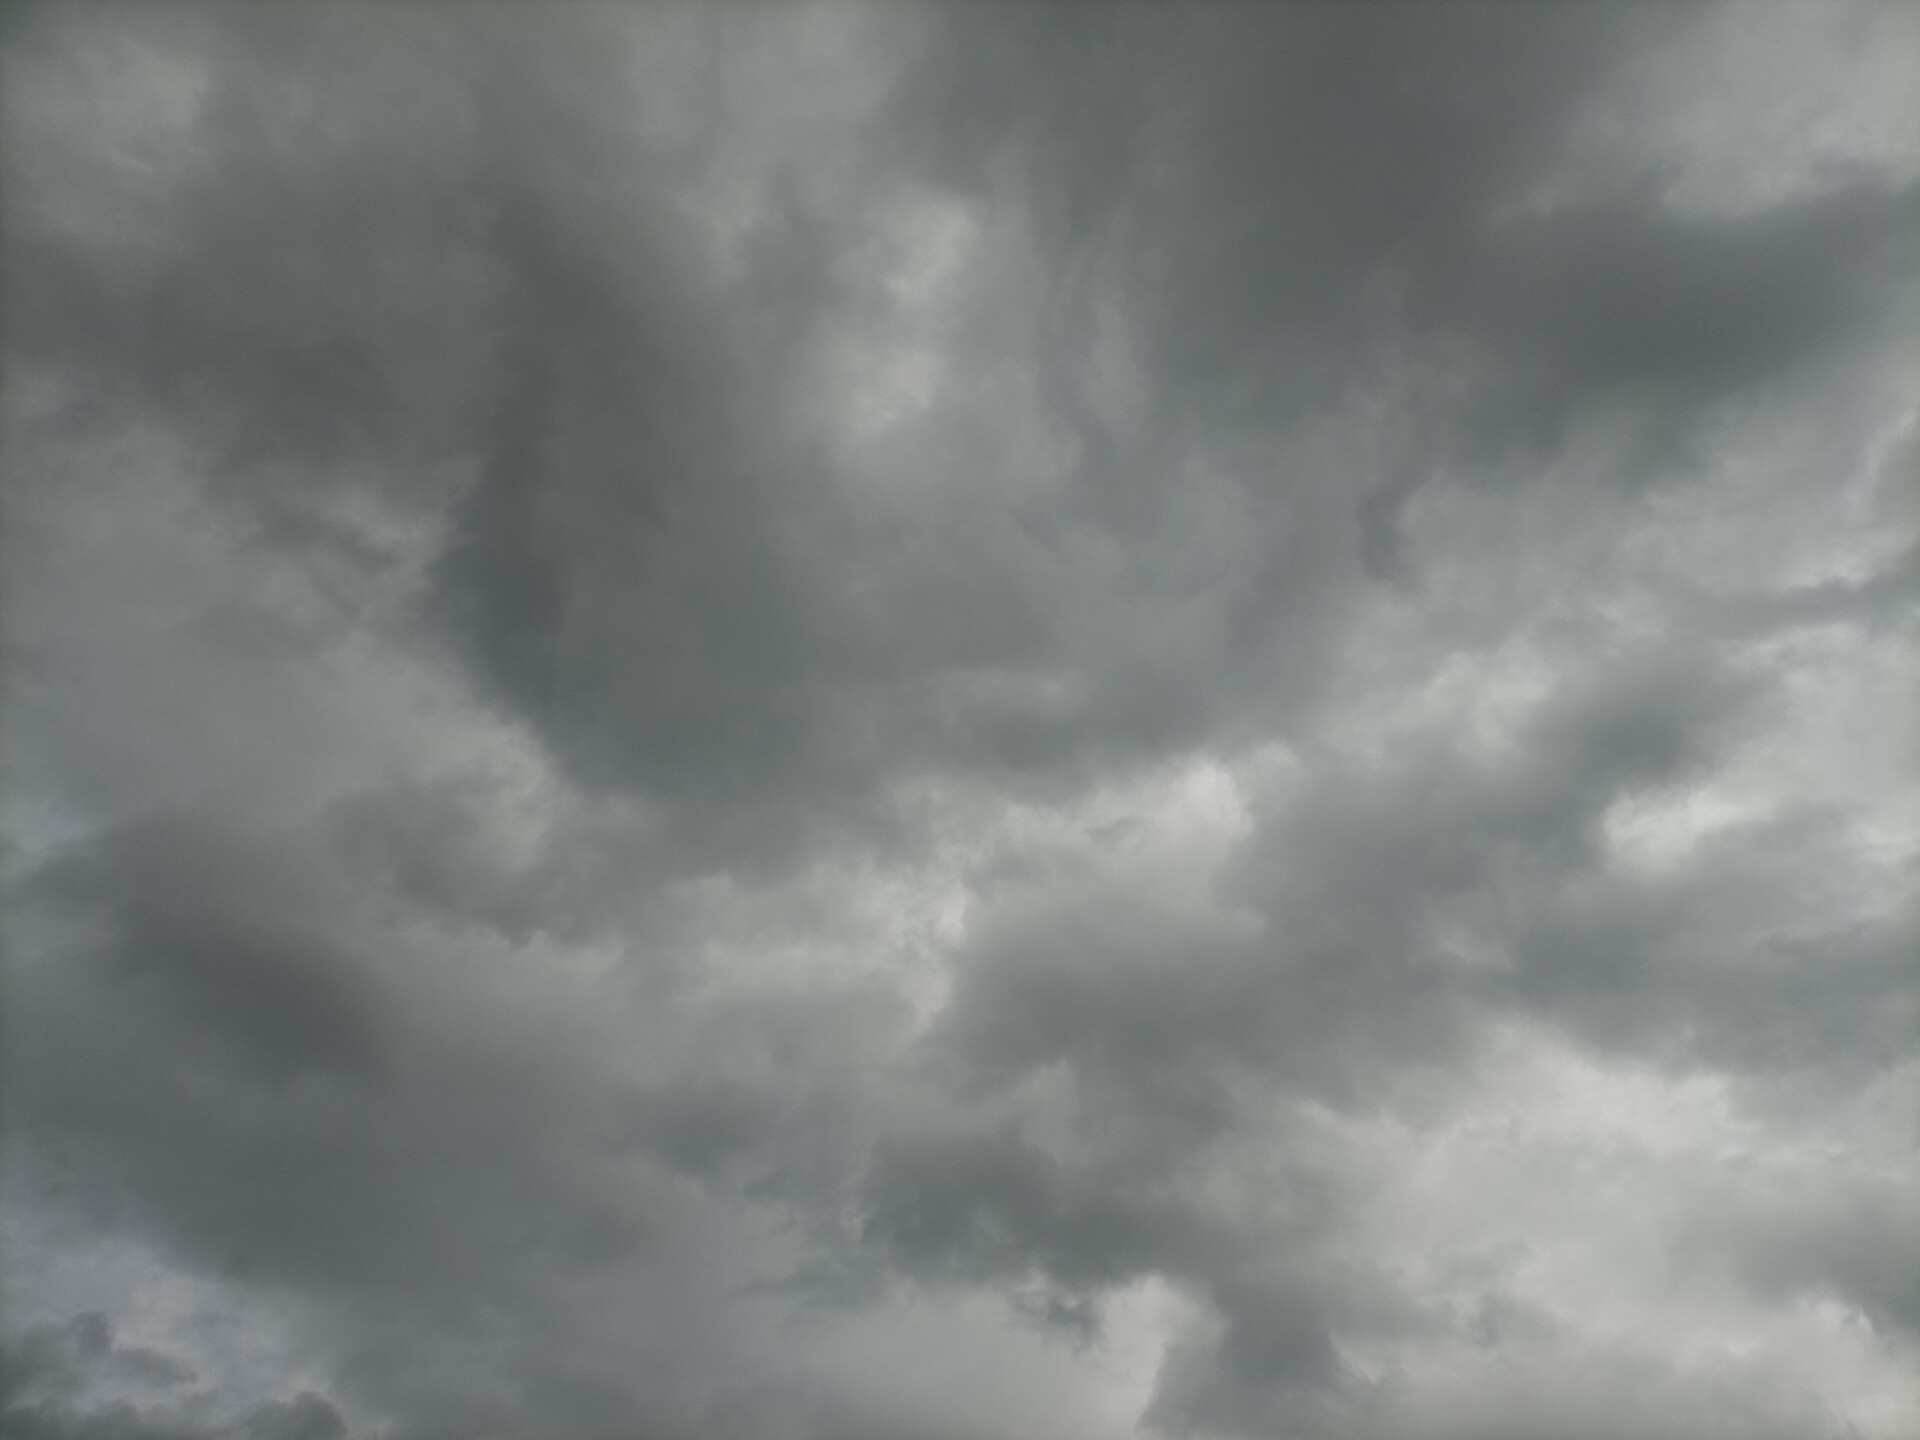 Heavily cloudy sky - Photo #9299 - motosha | Free Stock Photos